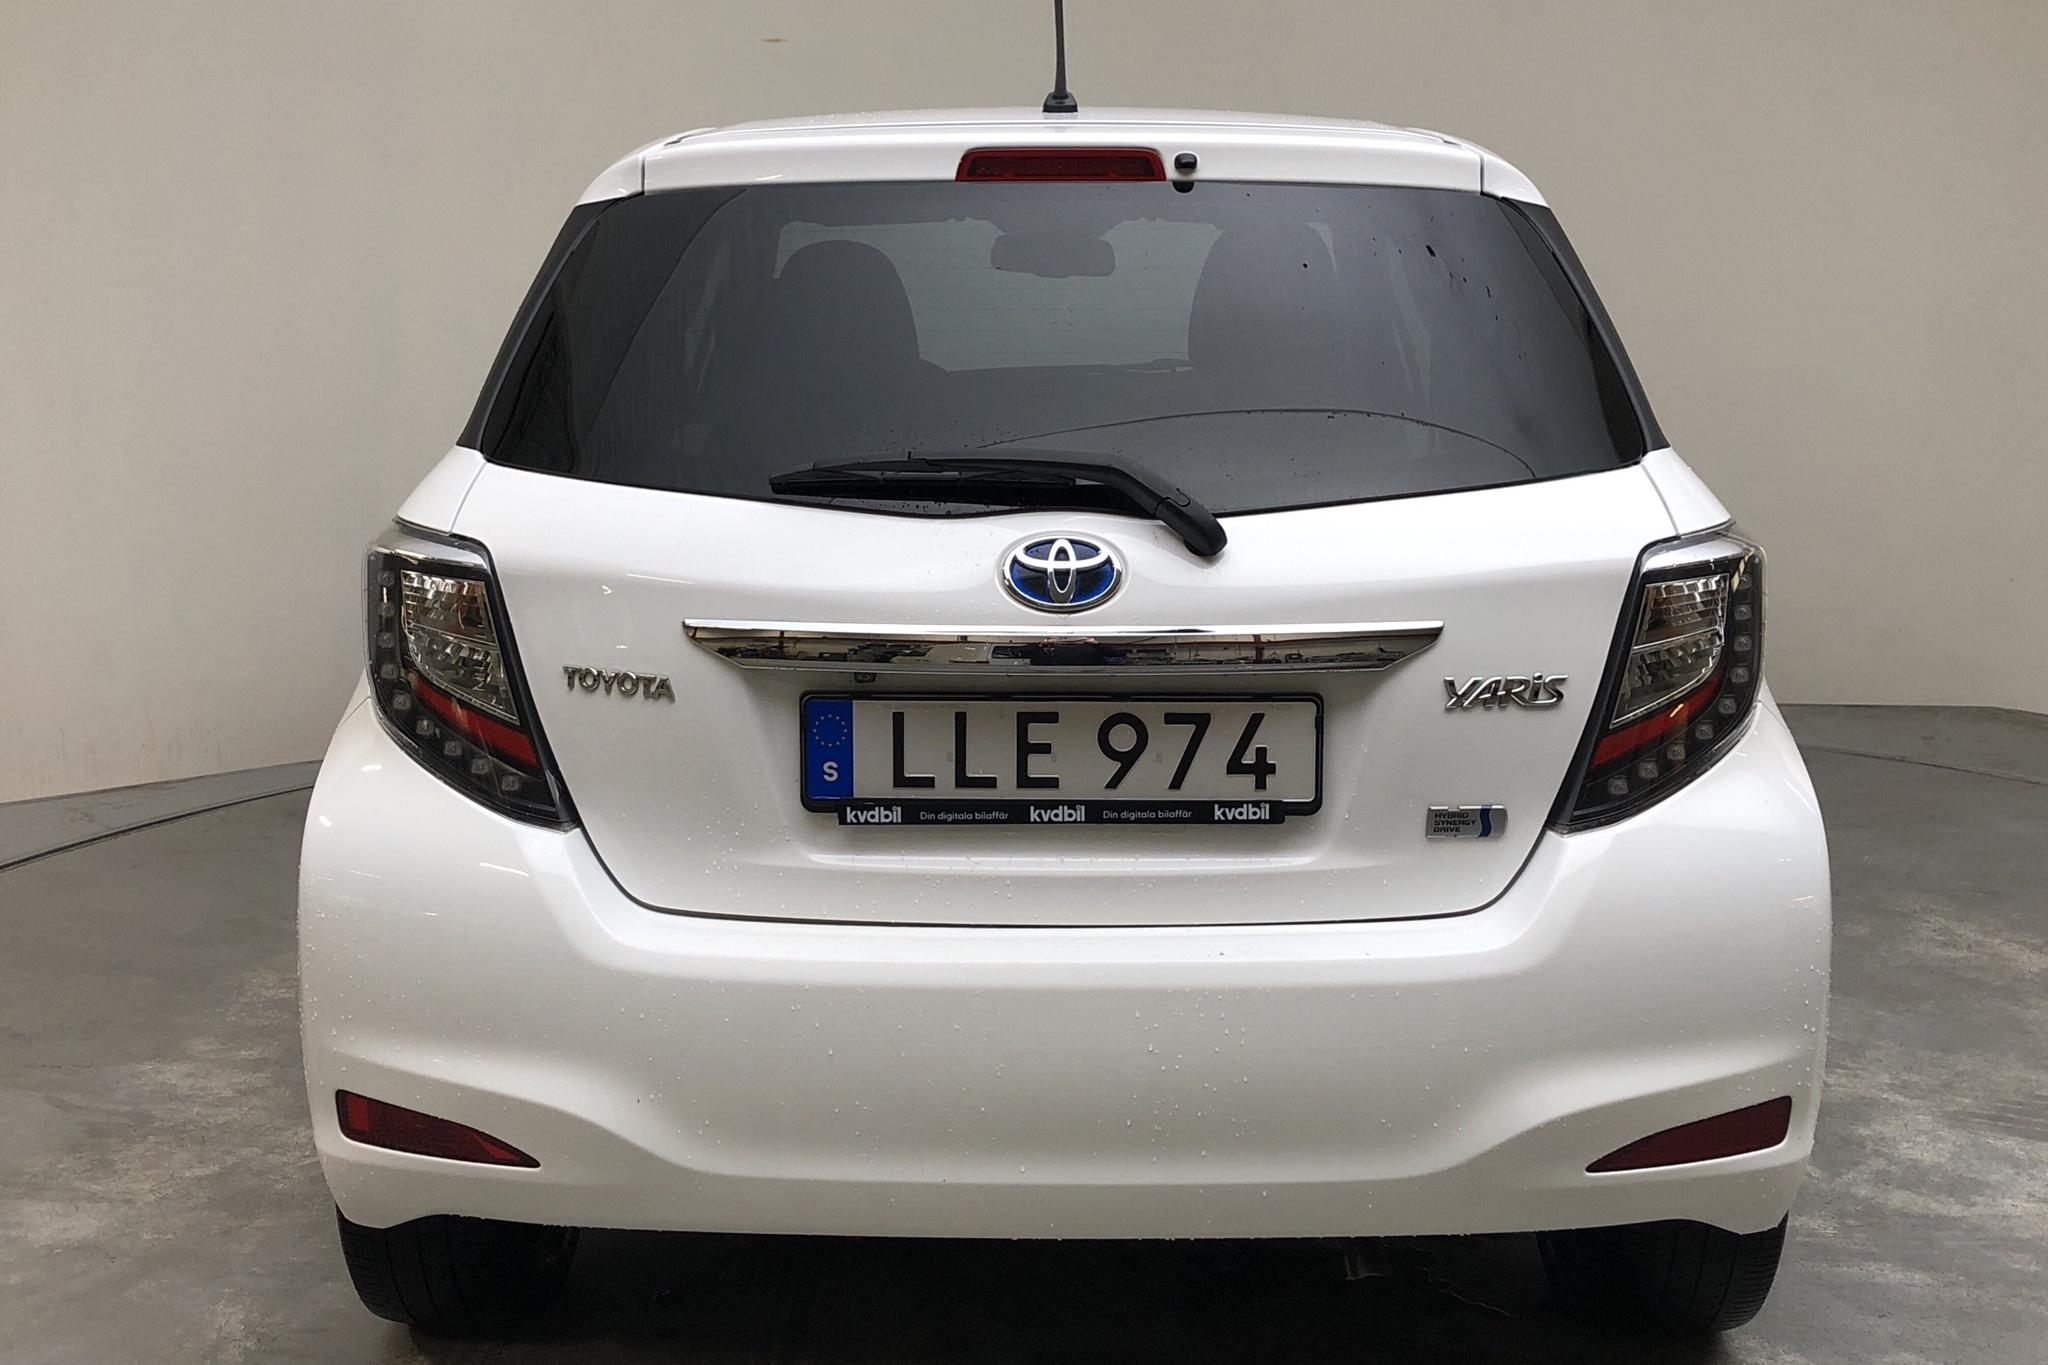 Toyota Yaris 1.5 HSD 5dr (75hk) - 83 430 km - Automatic - white - 2014